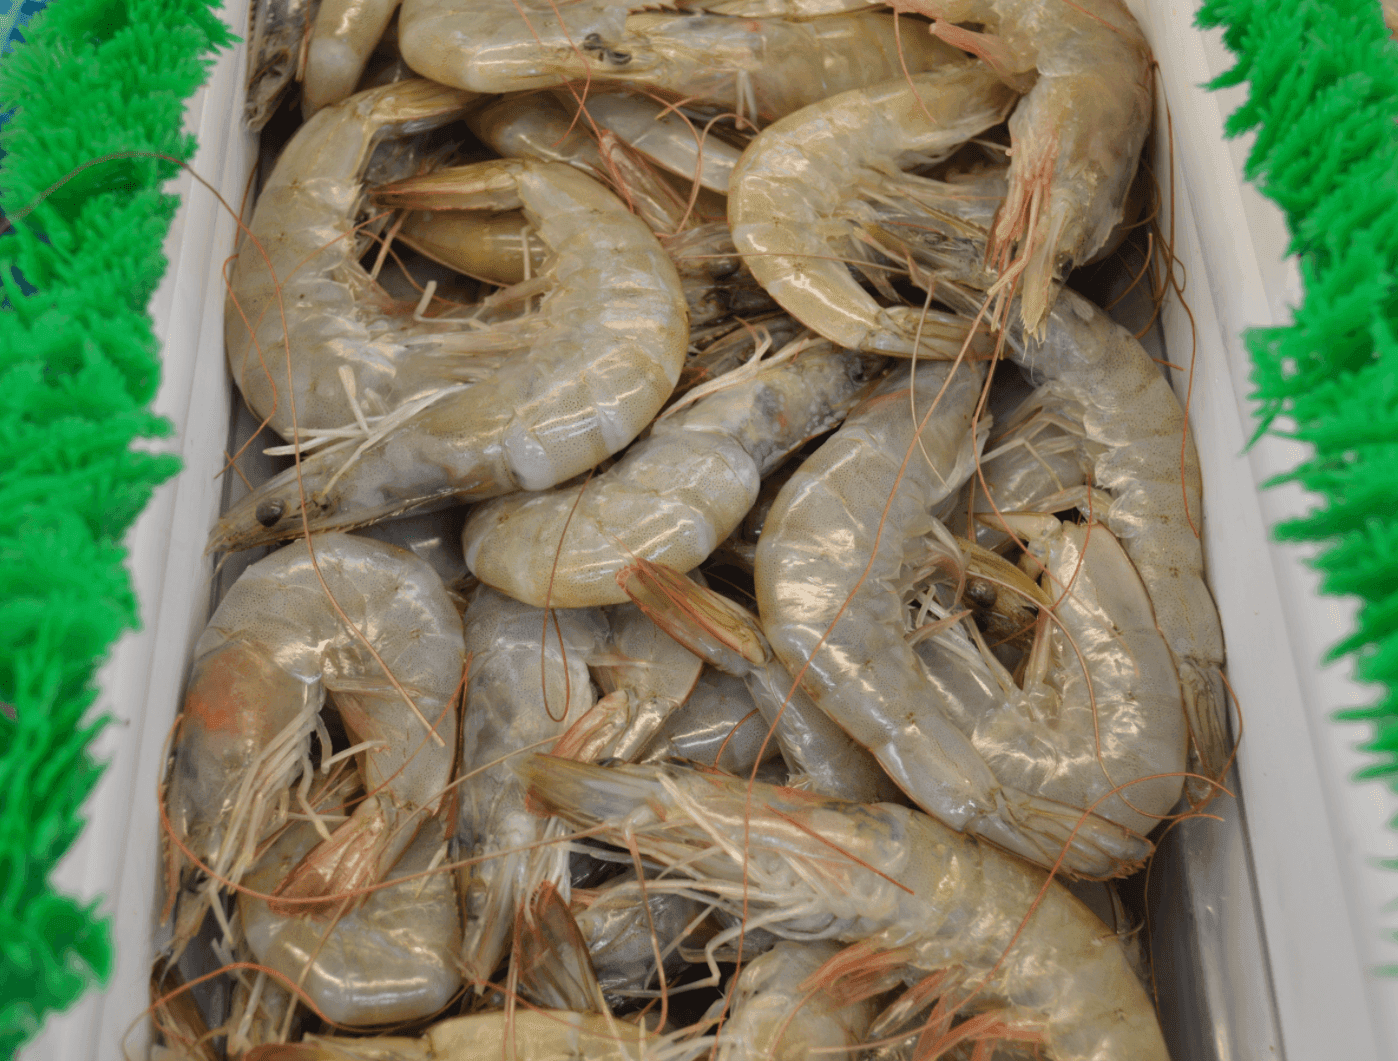 Head-on Shrimp - Camarones con Cabeza